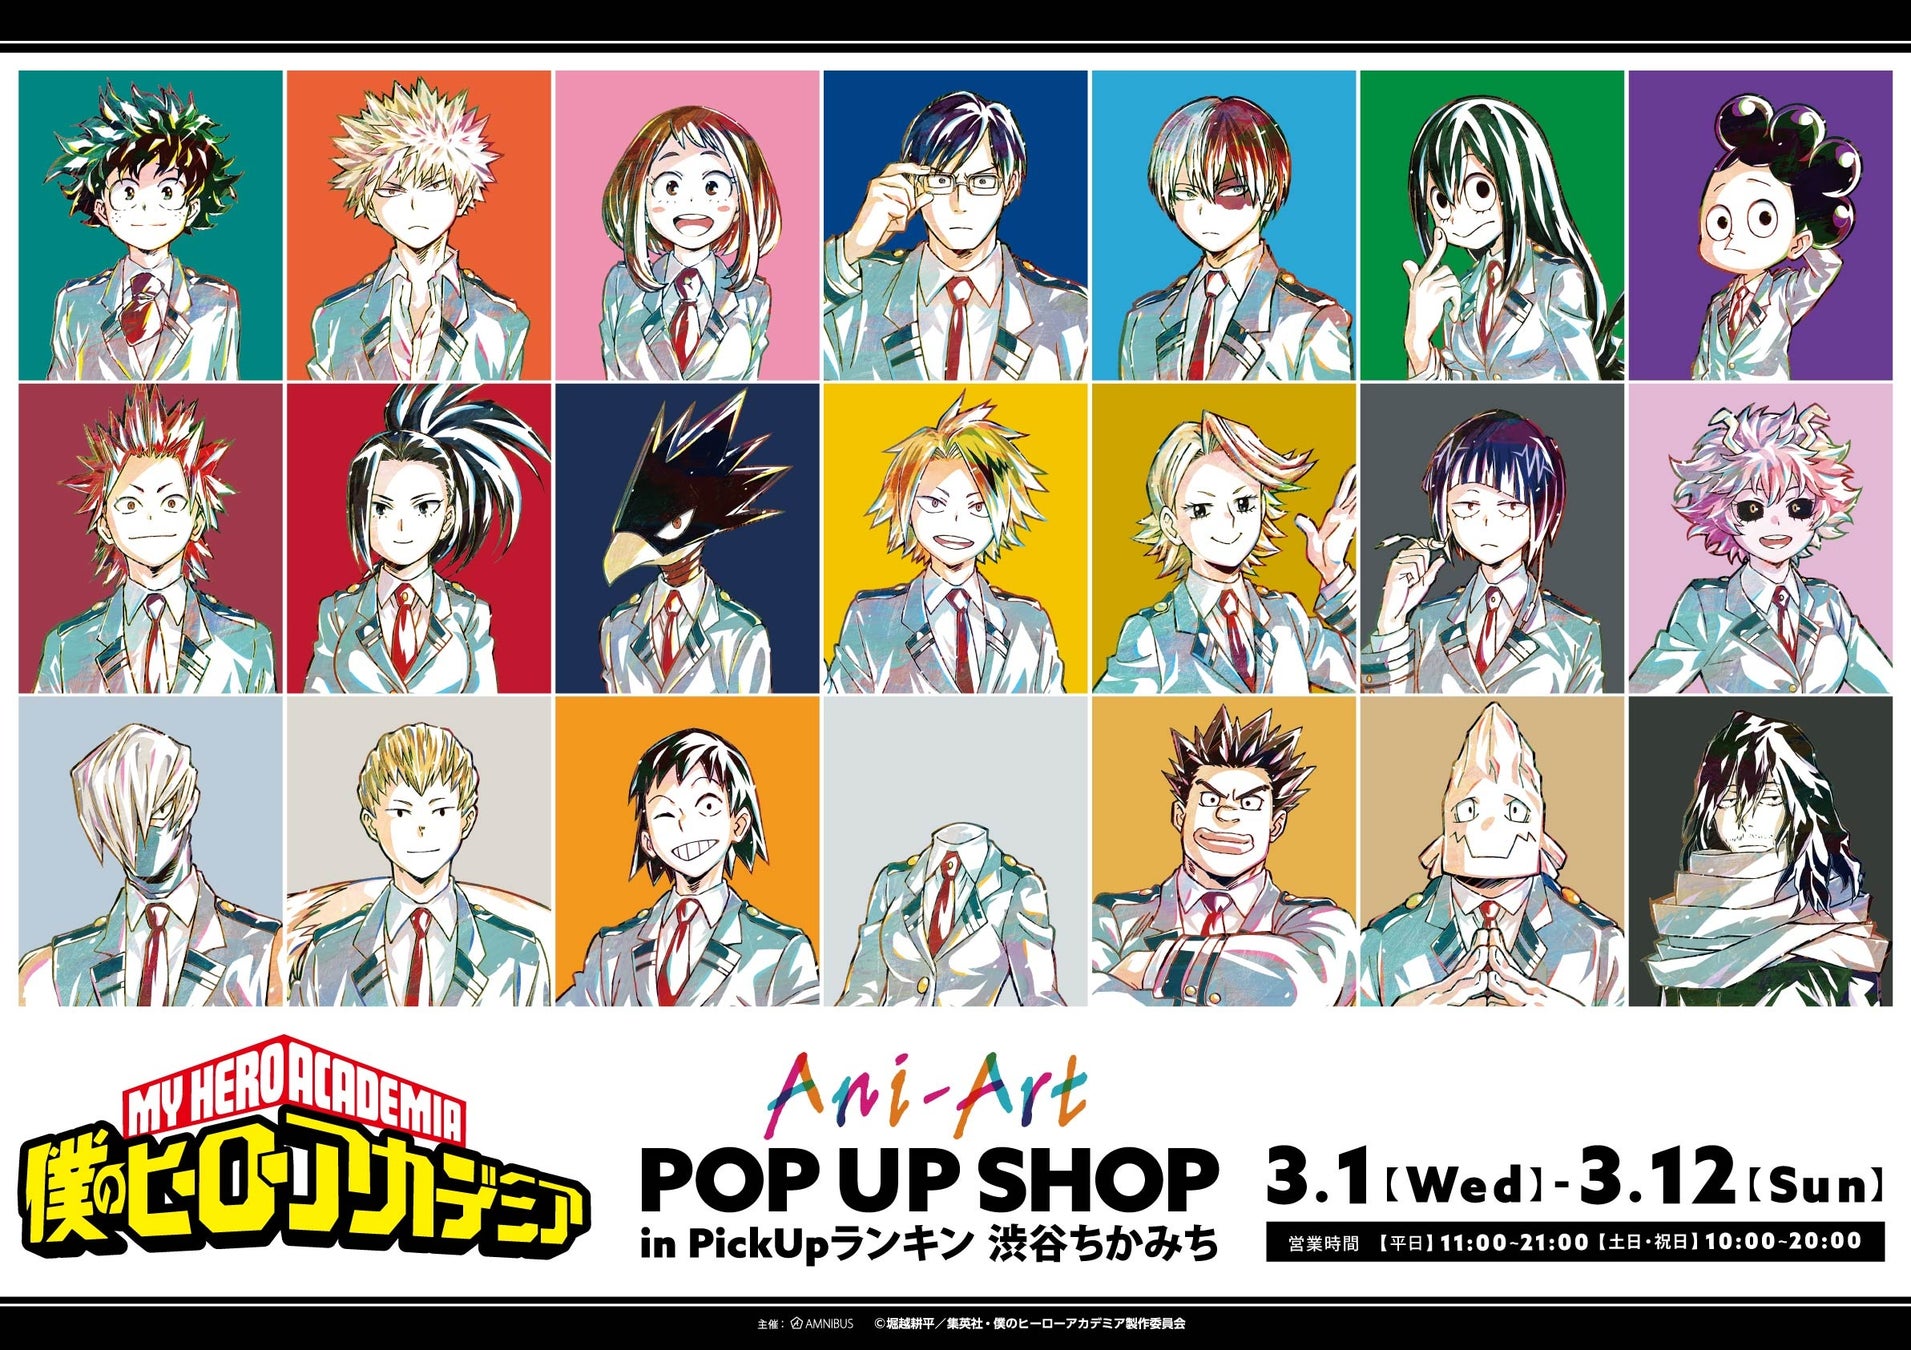 TVアニメ『僕のヒーローアカデミア』のイベント「 『僕のヒーローアカデミア』 Ani-Art POP UP SHOP in PickUpランキン 渋谷ちかみち」の開催が決定！